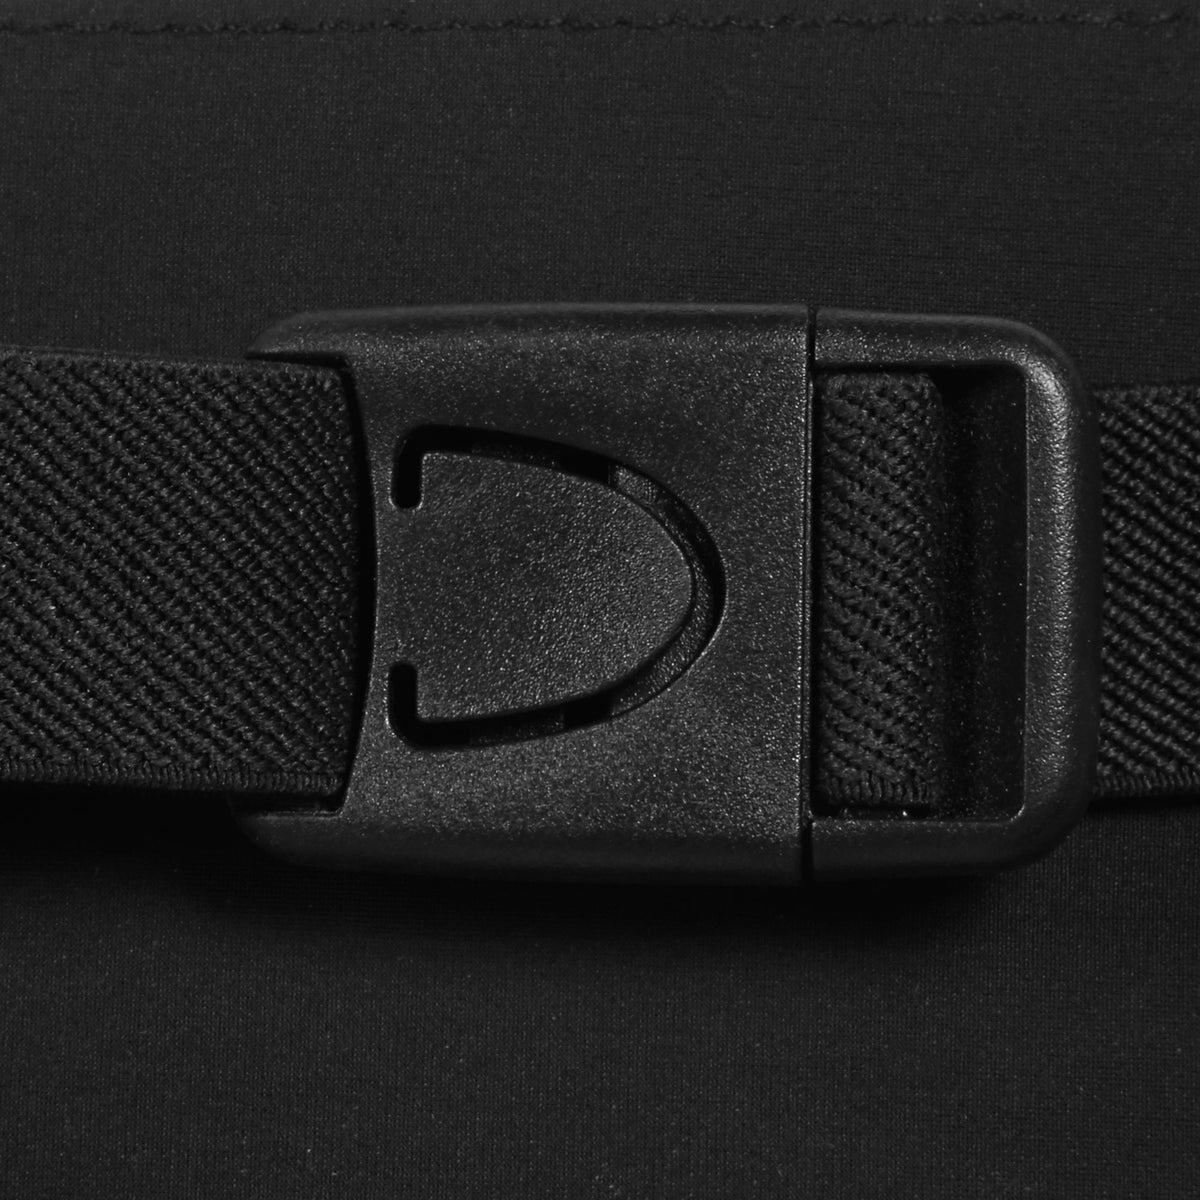 New Balance Smartphone Waist Pack buckle closeup